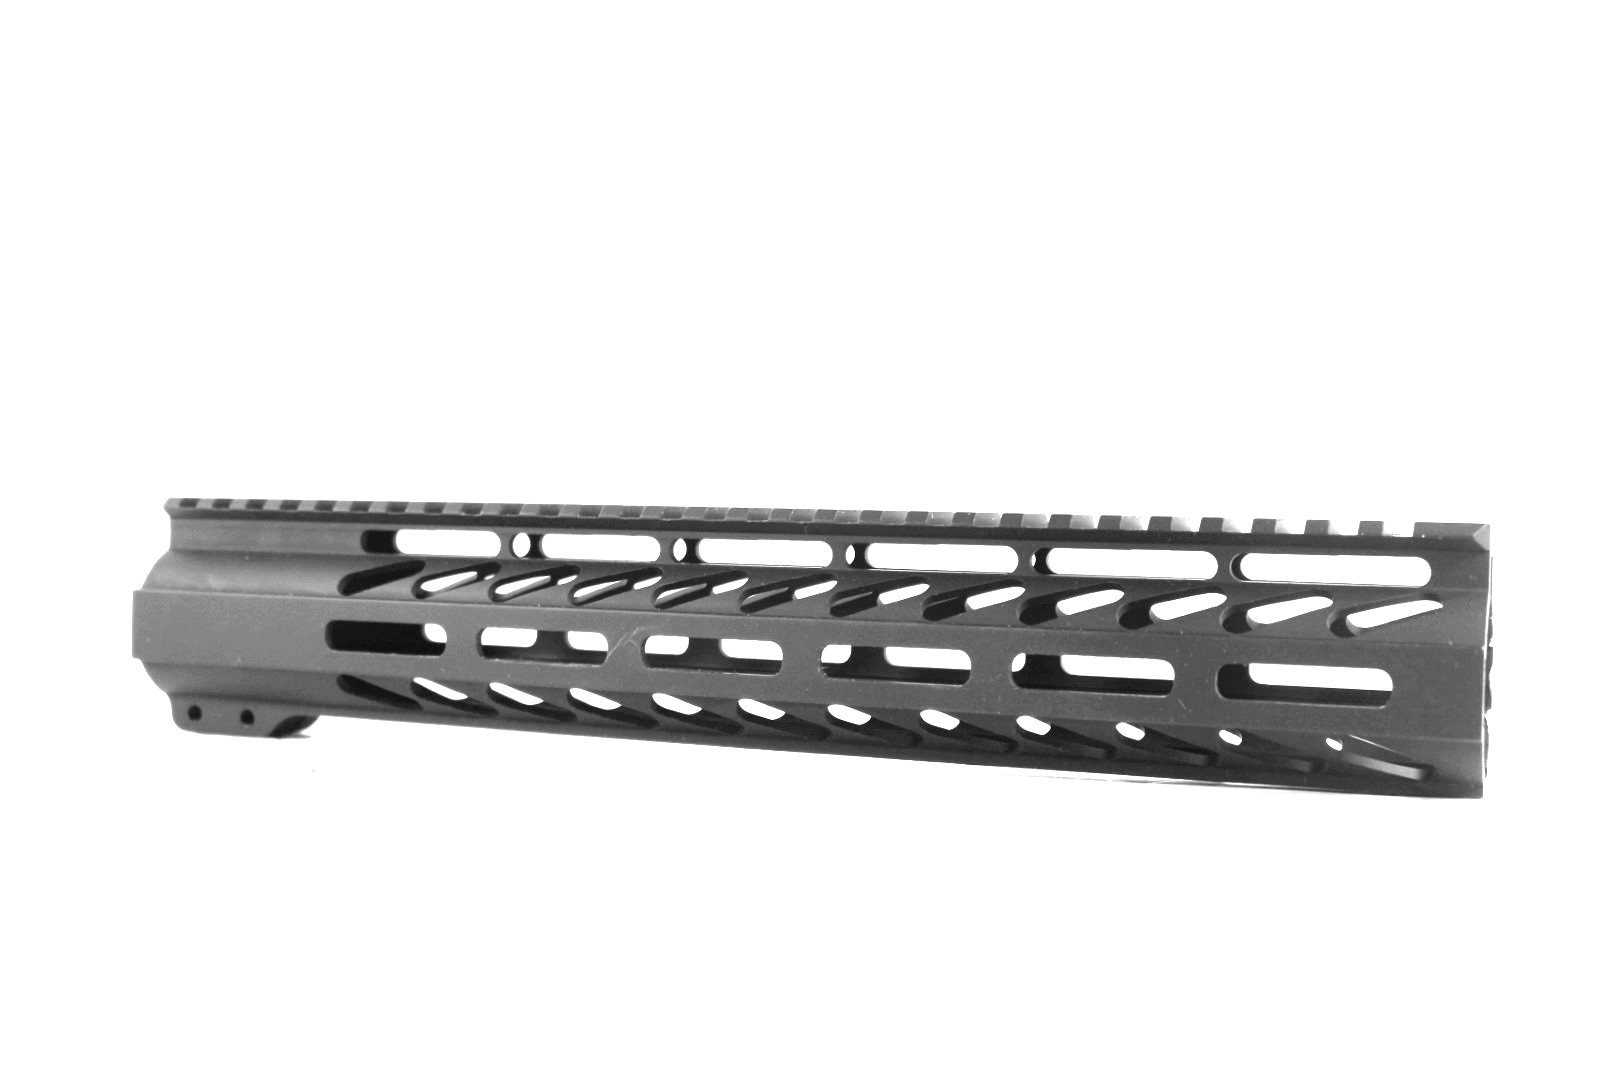 12 inch Ghost Firearms M-LOK Free Float Rail Handguard